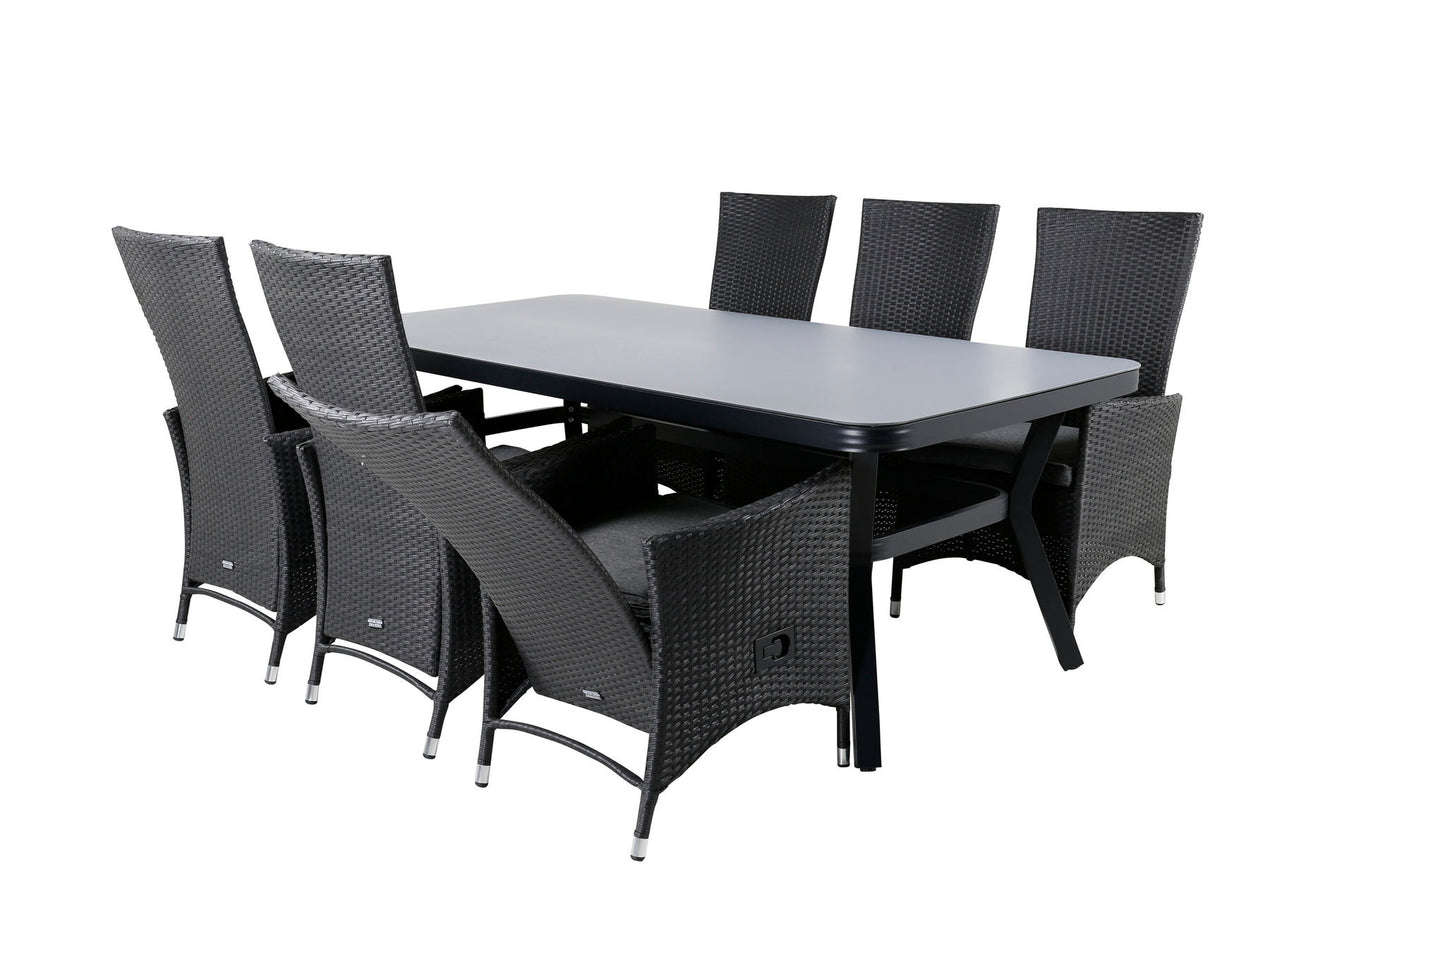 Virya - Spisebord, Sort Alu / Grå glas - big table+ Padova Stol (Recliner) - Sort/Grå